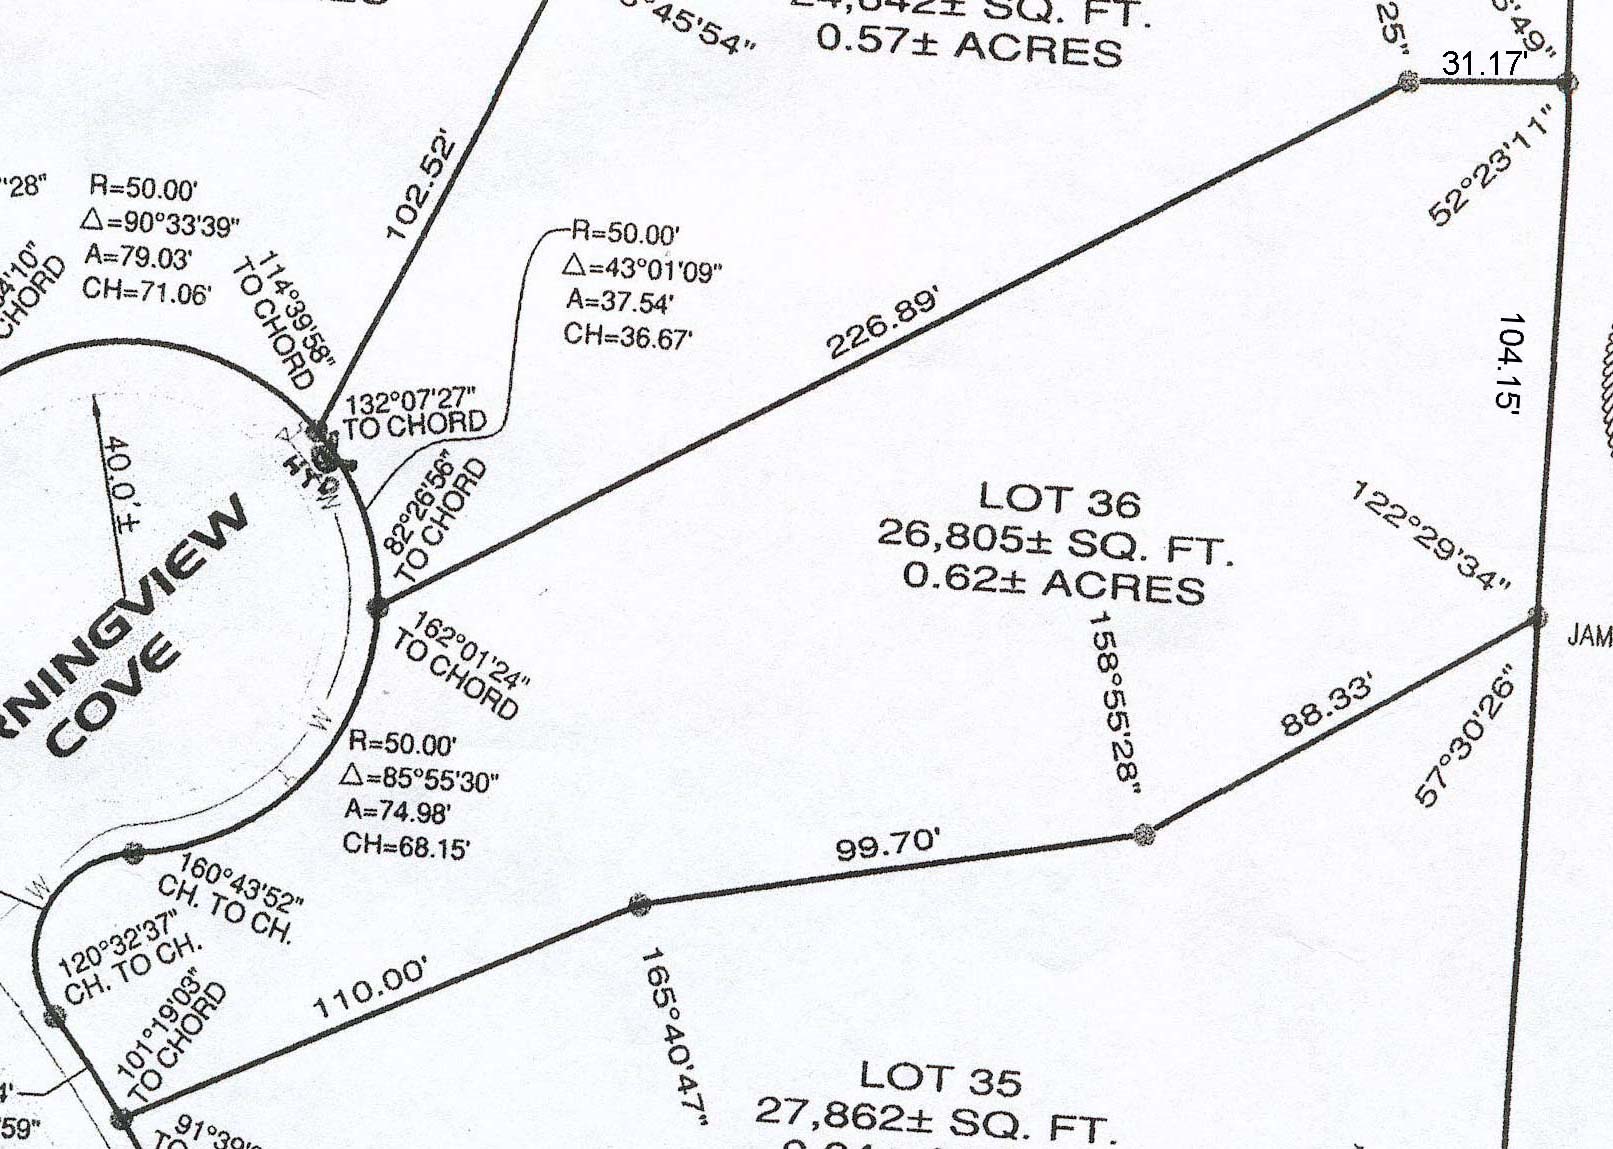 Bear Creek Ridge Sector 3 - Survey Lots 32
                - 35